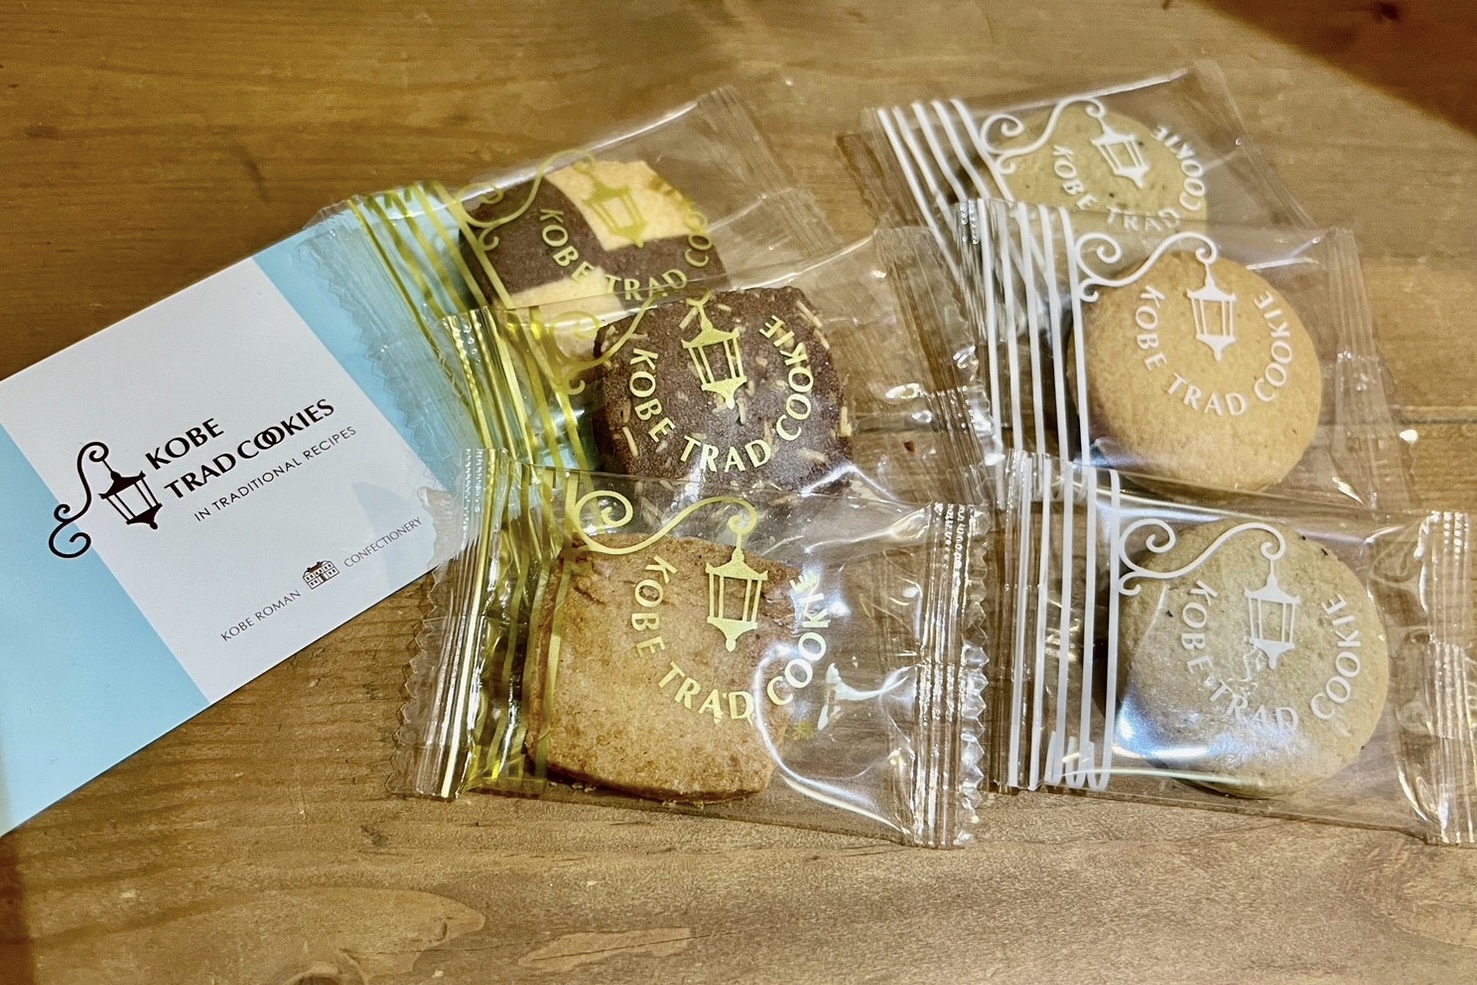 今月のオススメお菓子🍪神戸浪漫の伝統的な焼き菓子です☺️